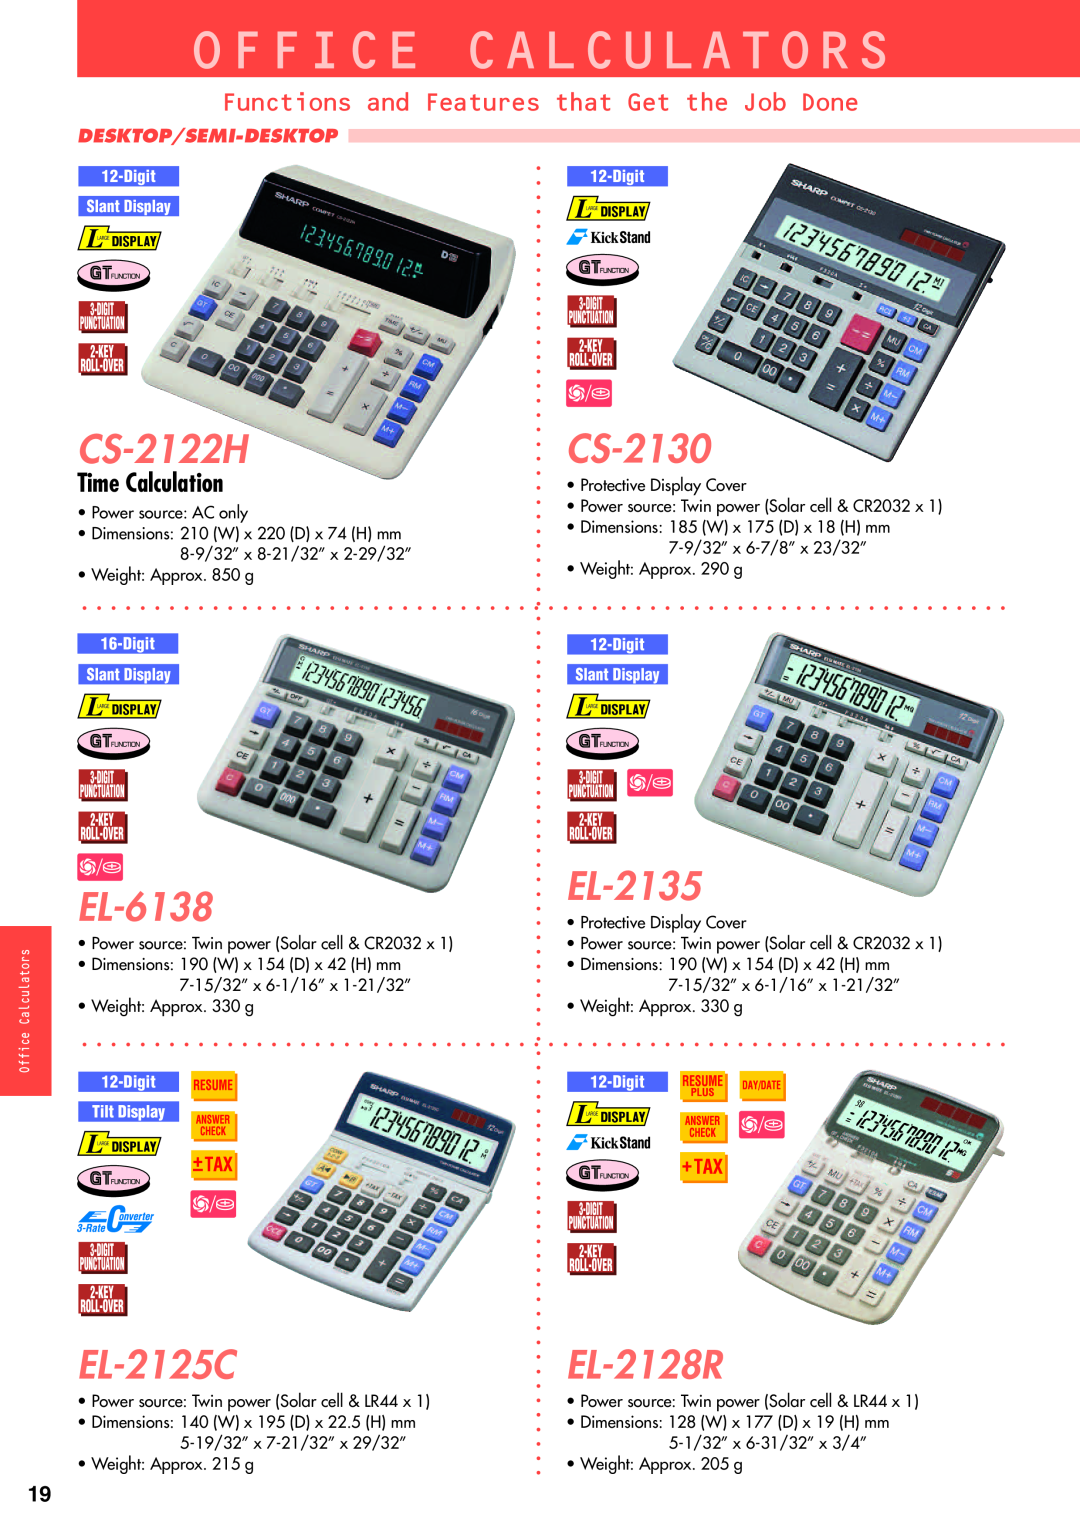 Sharp electronic calculator Office Calculators, CS-2122H, CS-2130, EL-6138, EL-2135, EL-2125C, EL-2128R, Time Calculation 